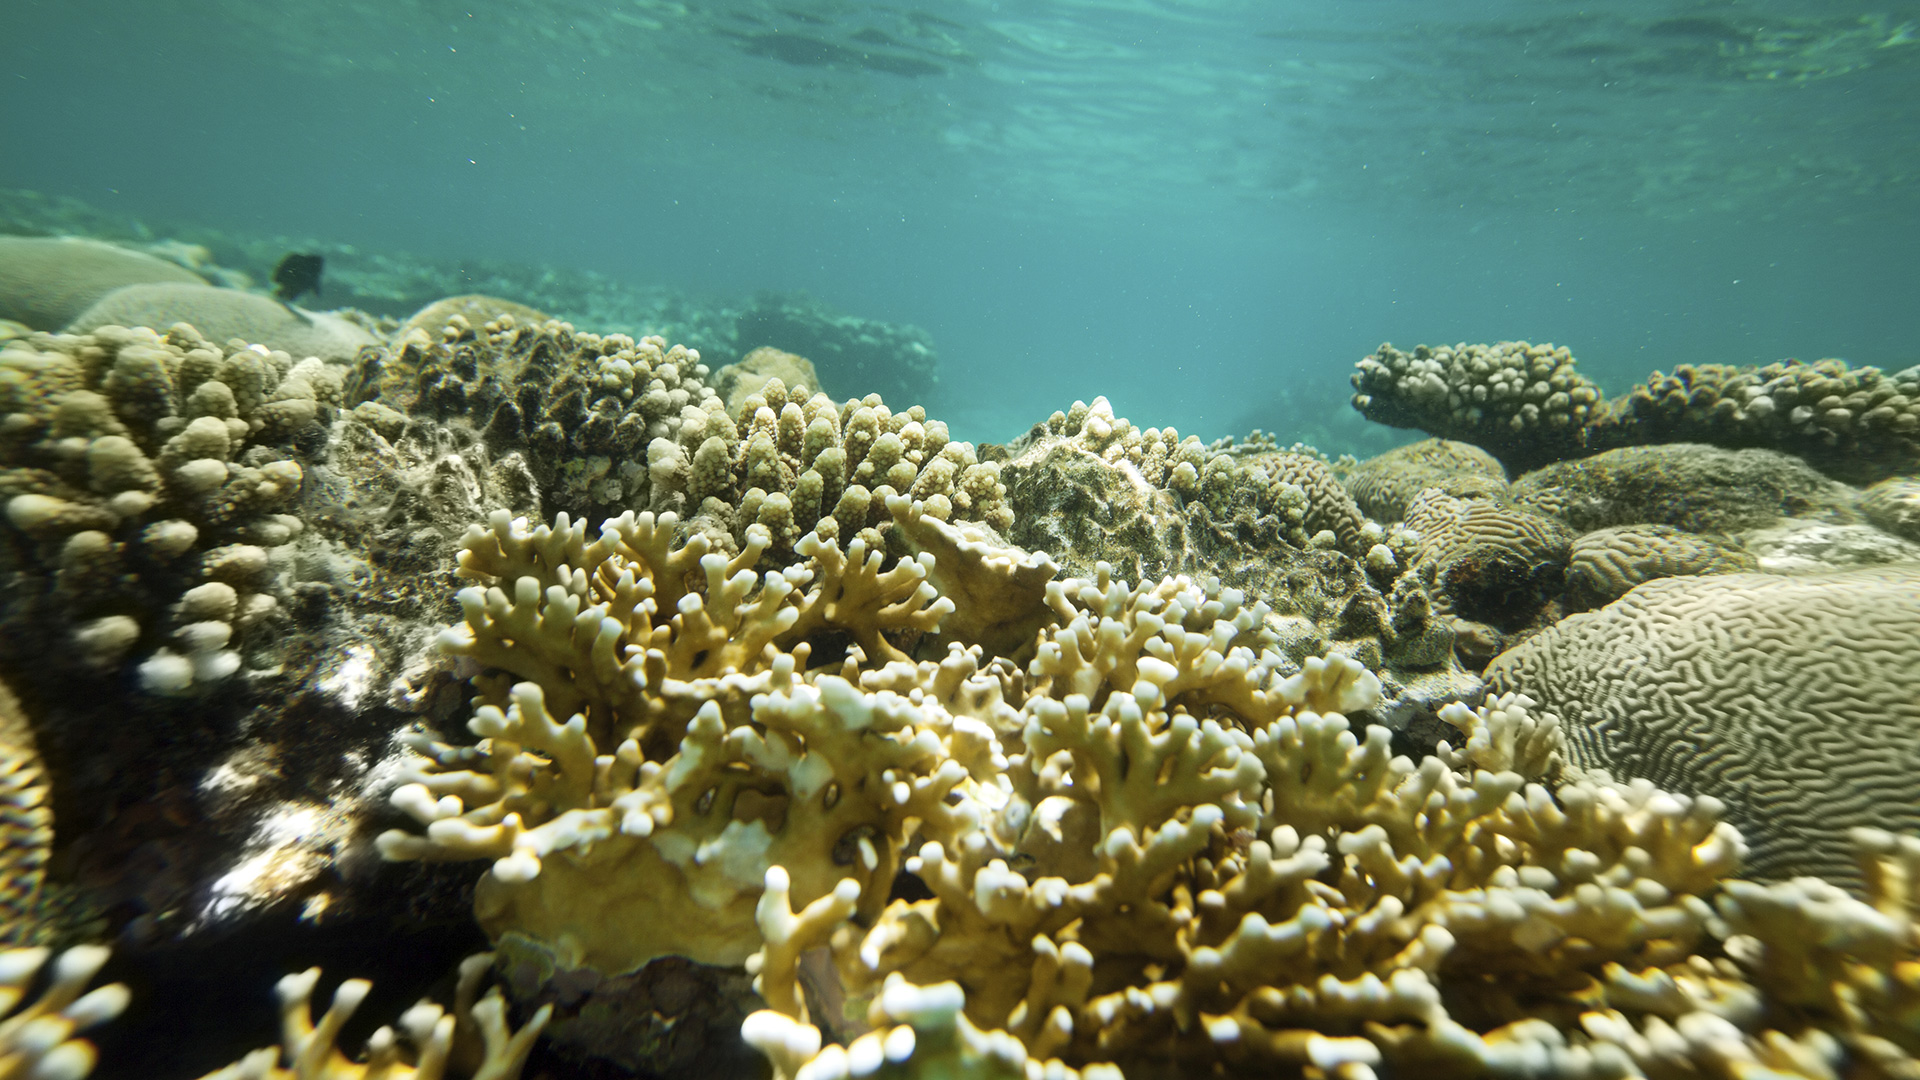 Korallen gedeihen nicht in jedem Wasser gleich gut